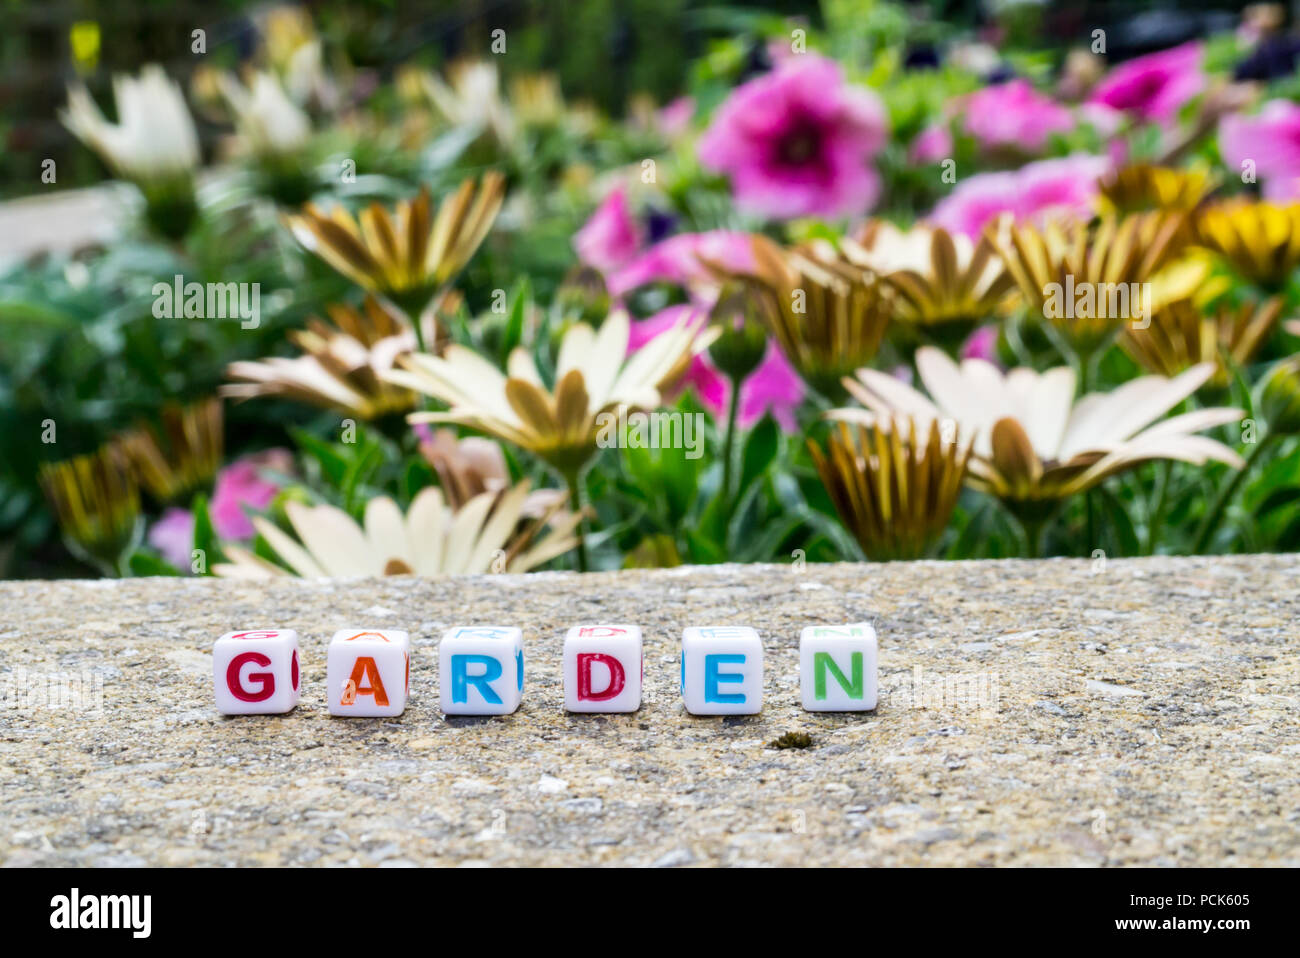 Perles de l'orthographe alphabétique 'jardin' à côté d'un lit de fleur Banque D'Images